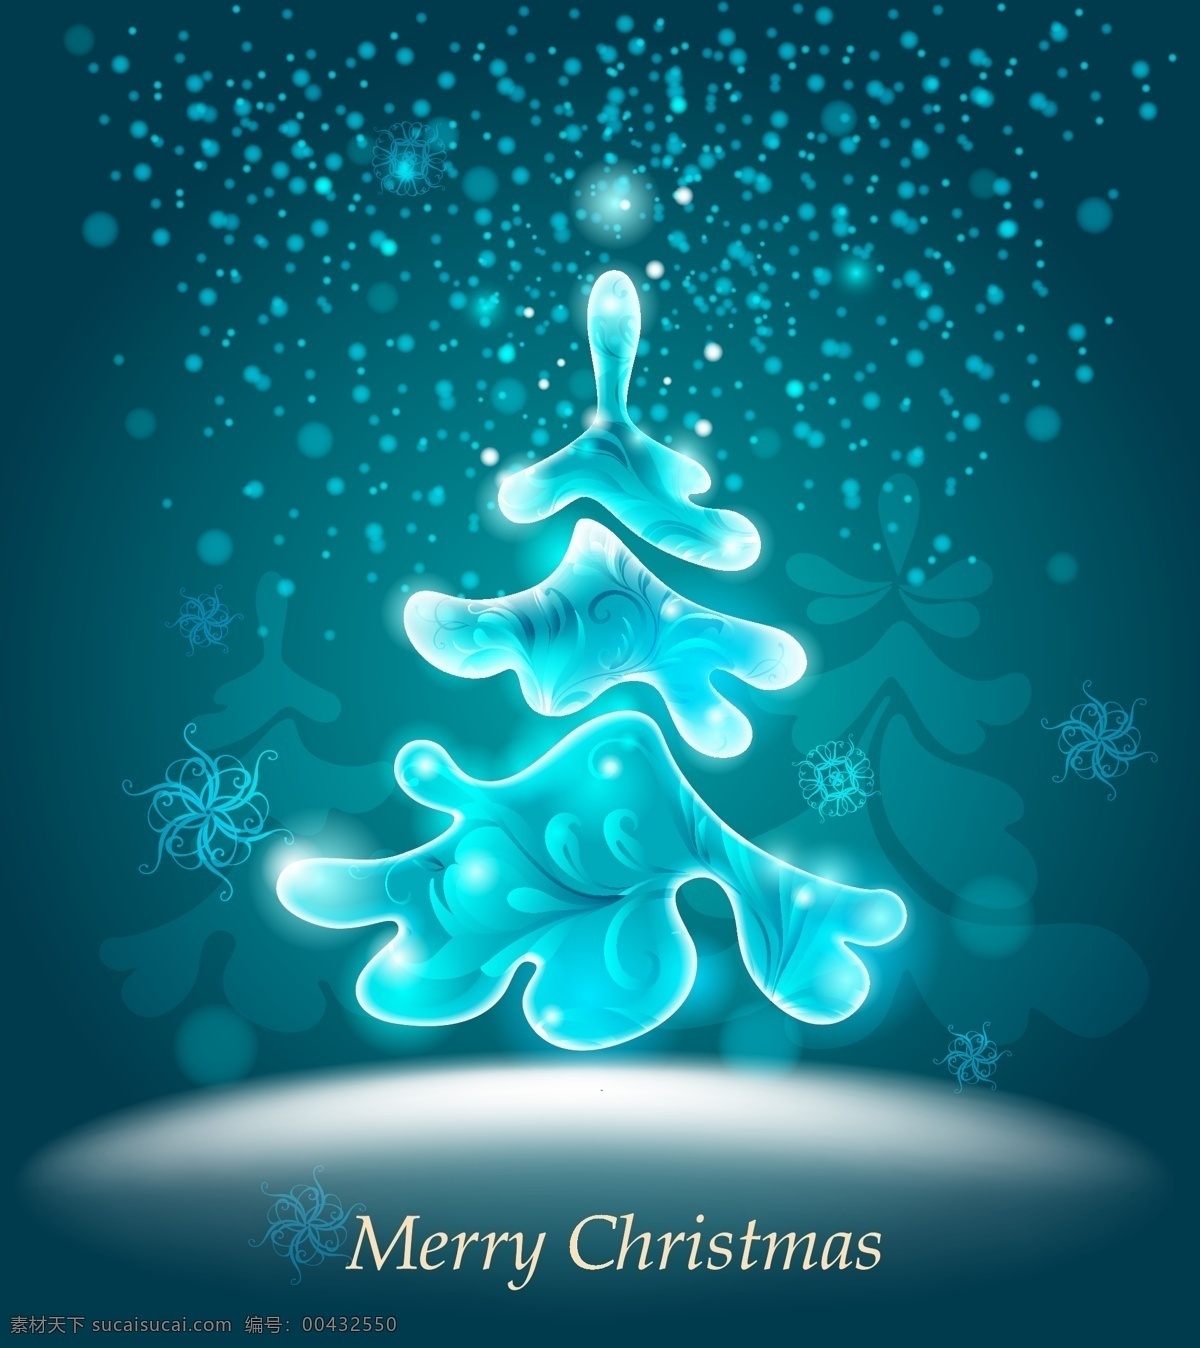 冰 蓝色 圣诞树 矢量 材料 节日 圣诞 圣诞快乐 树 雪花 冰冷的 向量 矢量图 其他节日